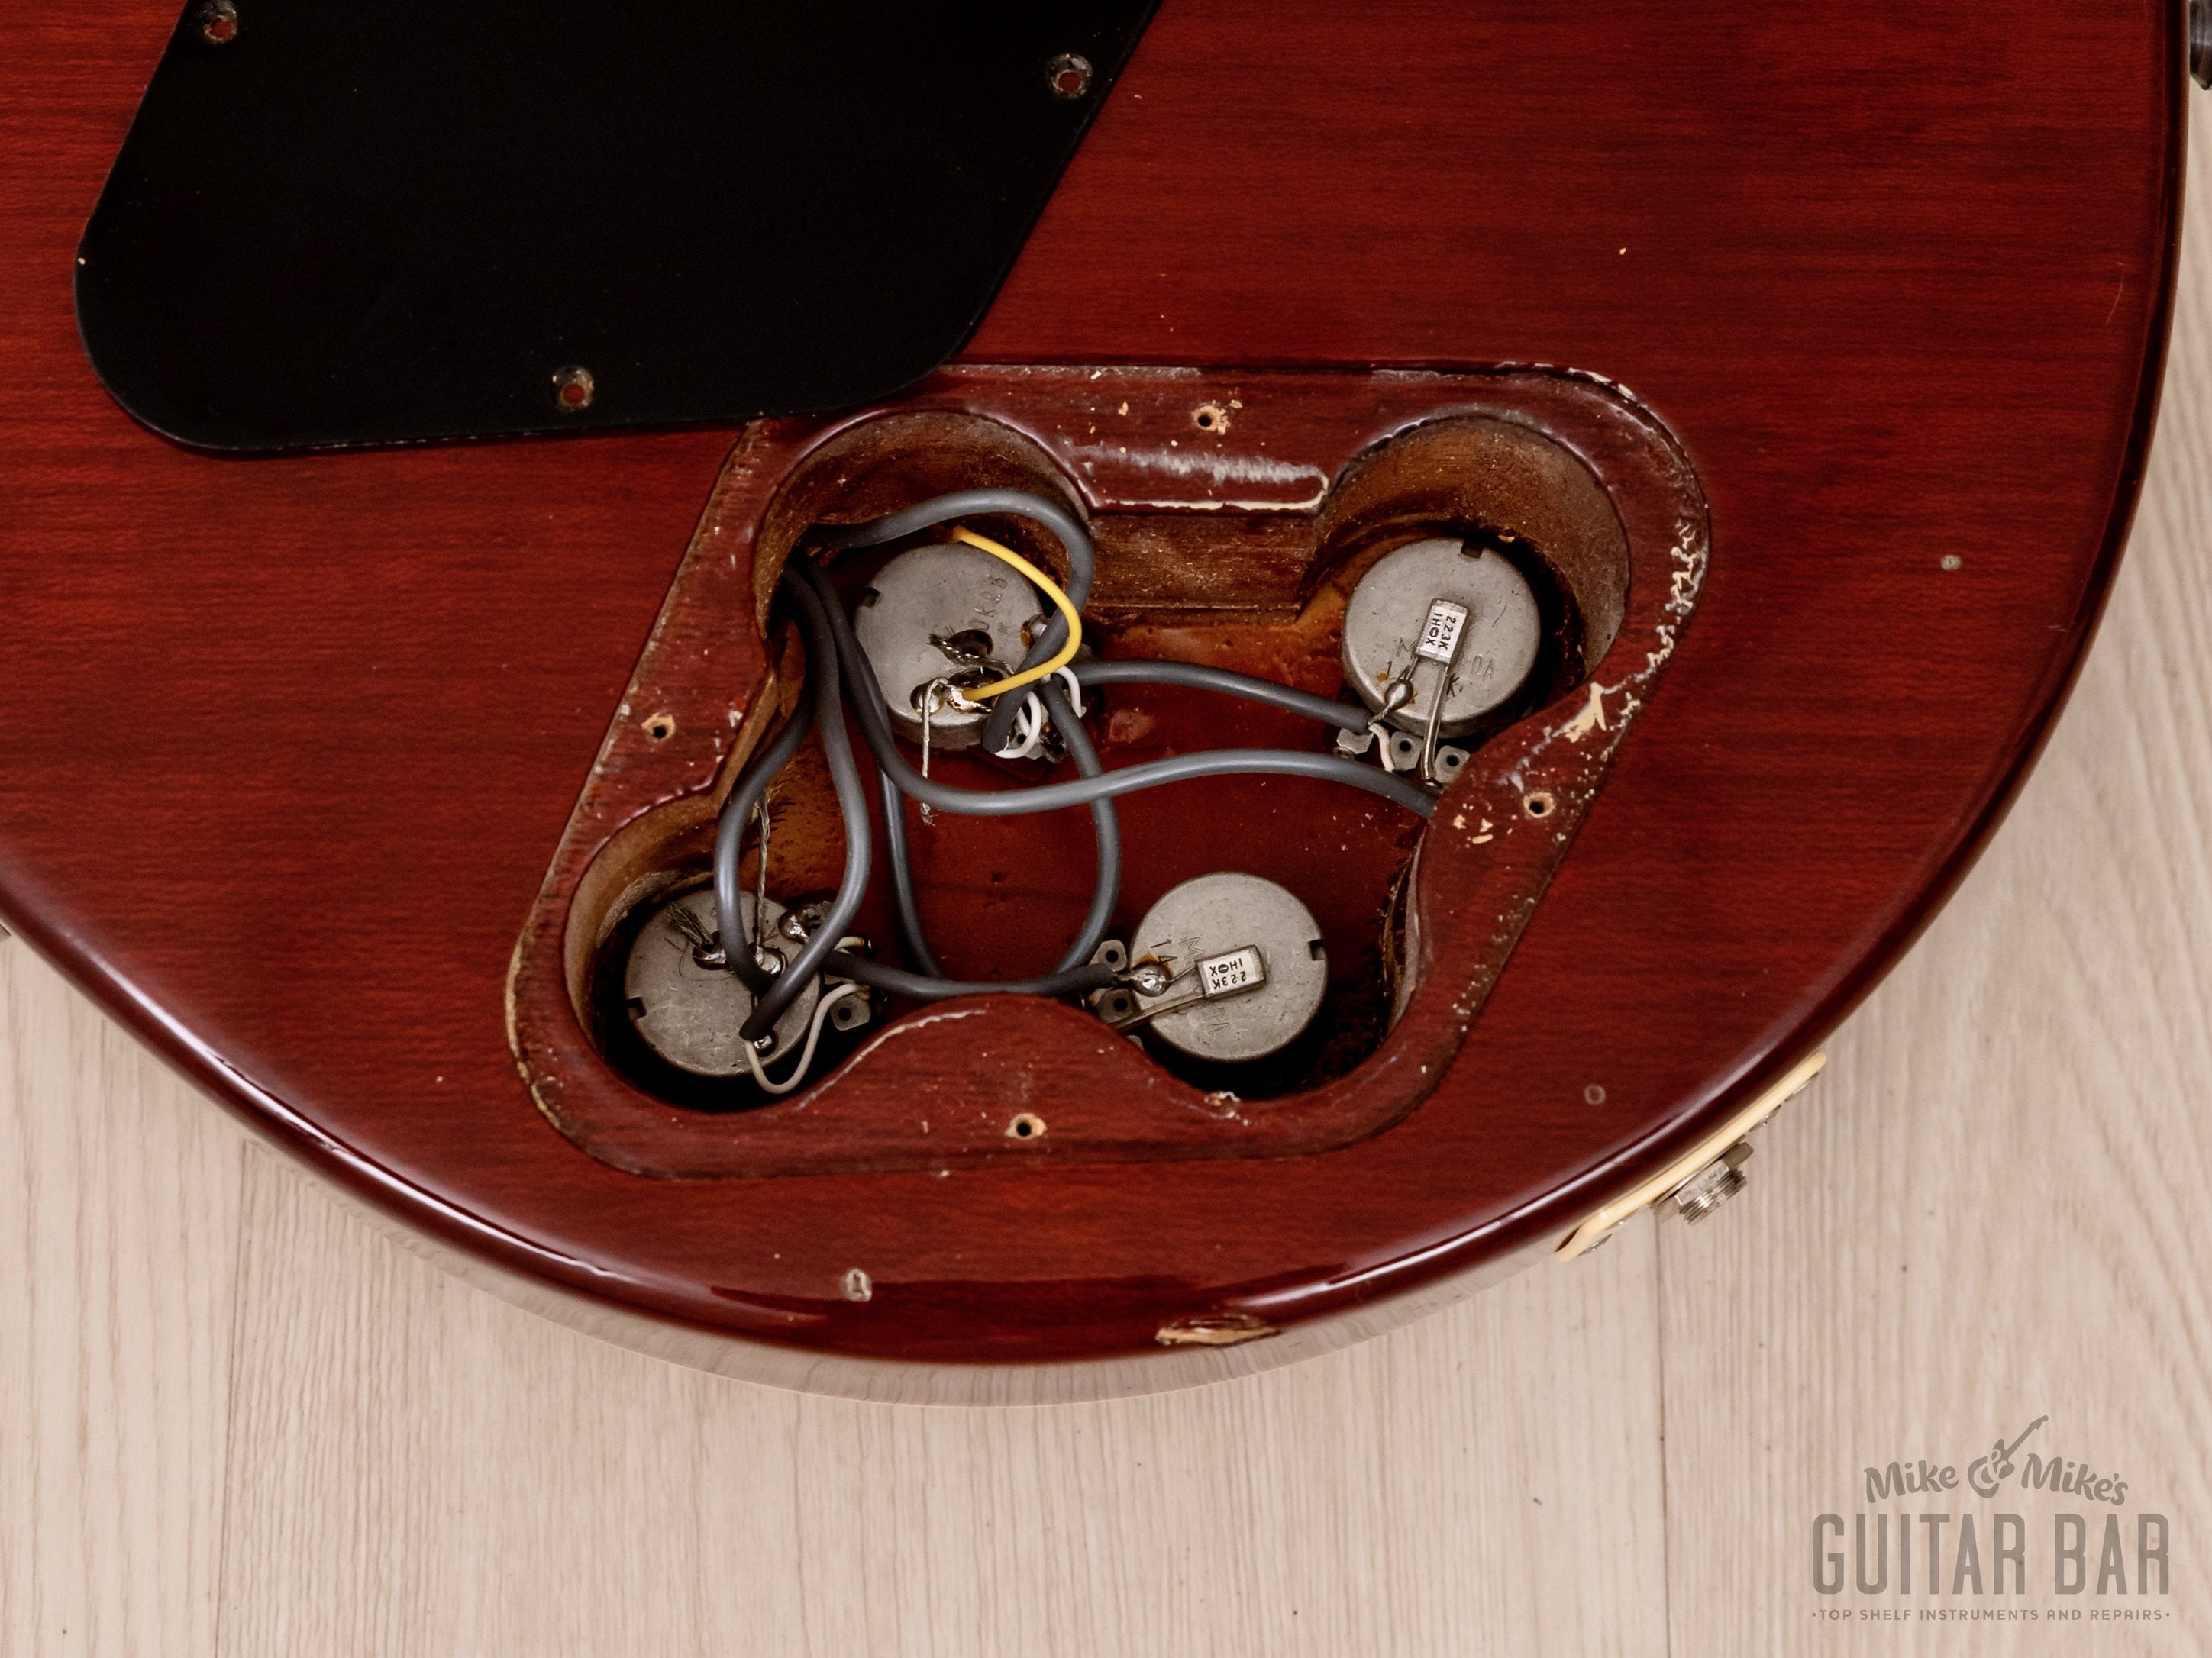 1991 Burny Super Grade RLG-60 “‘59 Model” Vintage Guitar Cherry Sunburst w/ VH-1 Pickups, Japan